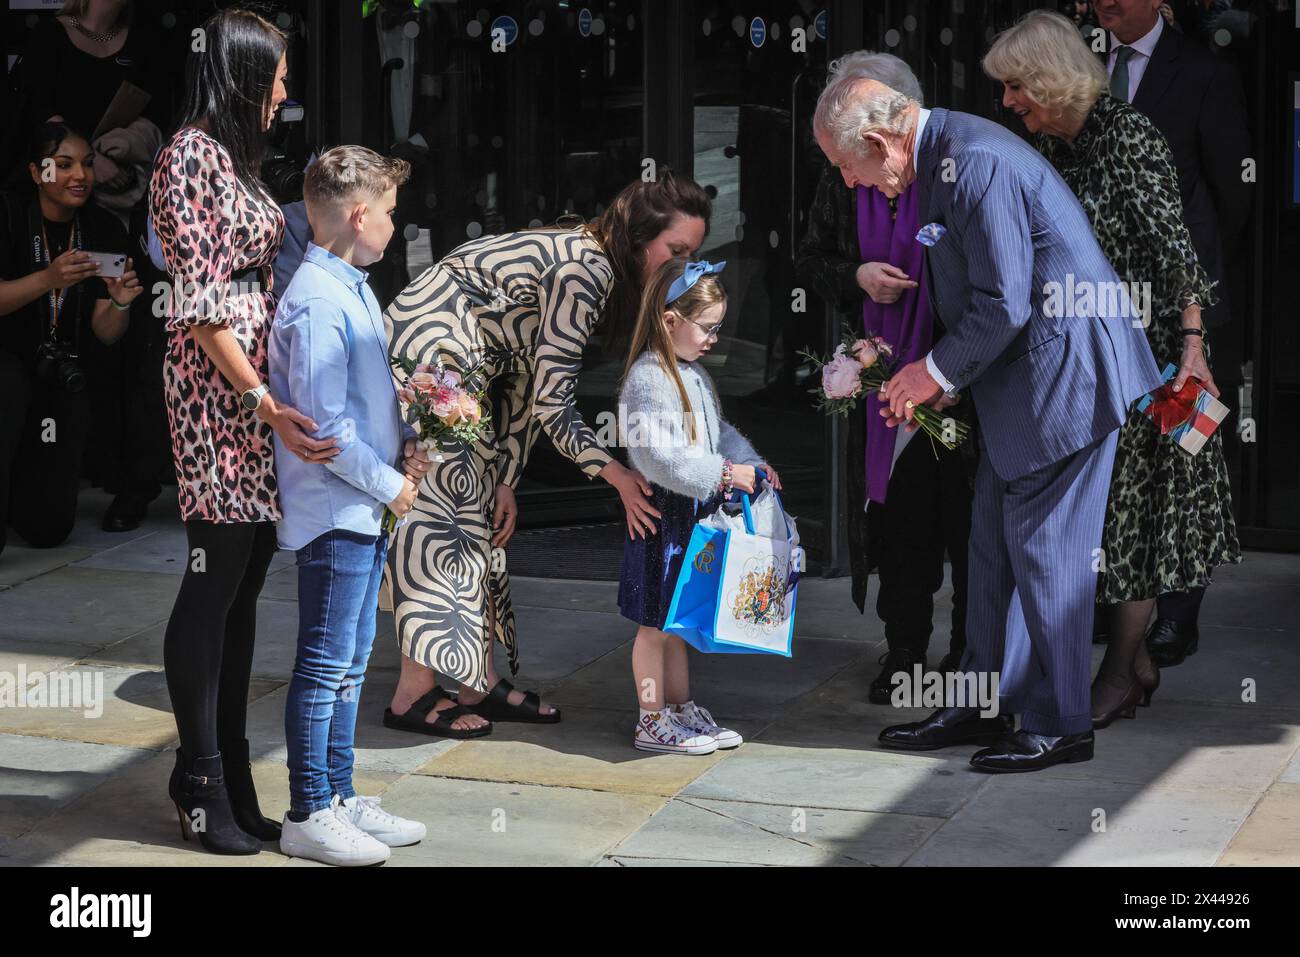 Londres, Royaume-Uni. 30 avril 2024. Le roi Charles et la reine Camilla visitent le Centre de cancérologie UCH Macmillan à Londres. C'est le premier engagement public dans une démarche du roi pour retourner au service public après son diagnostic de cancer. Crédit : Imageplotter/Alamy Live News Banque D'Images